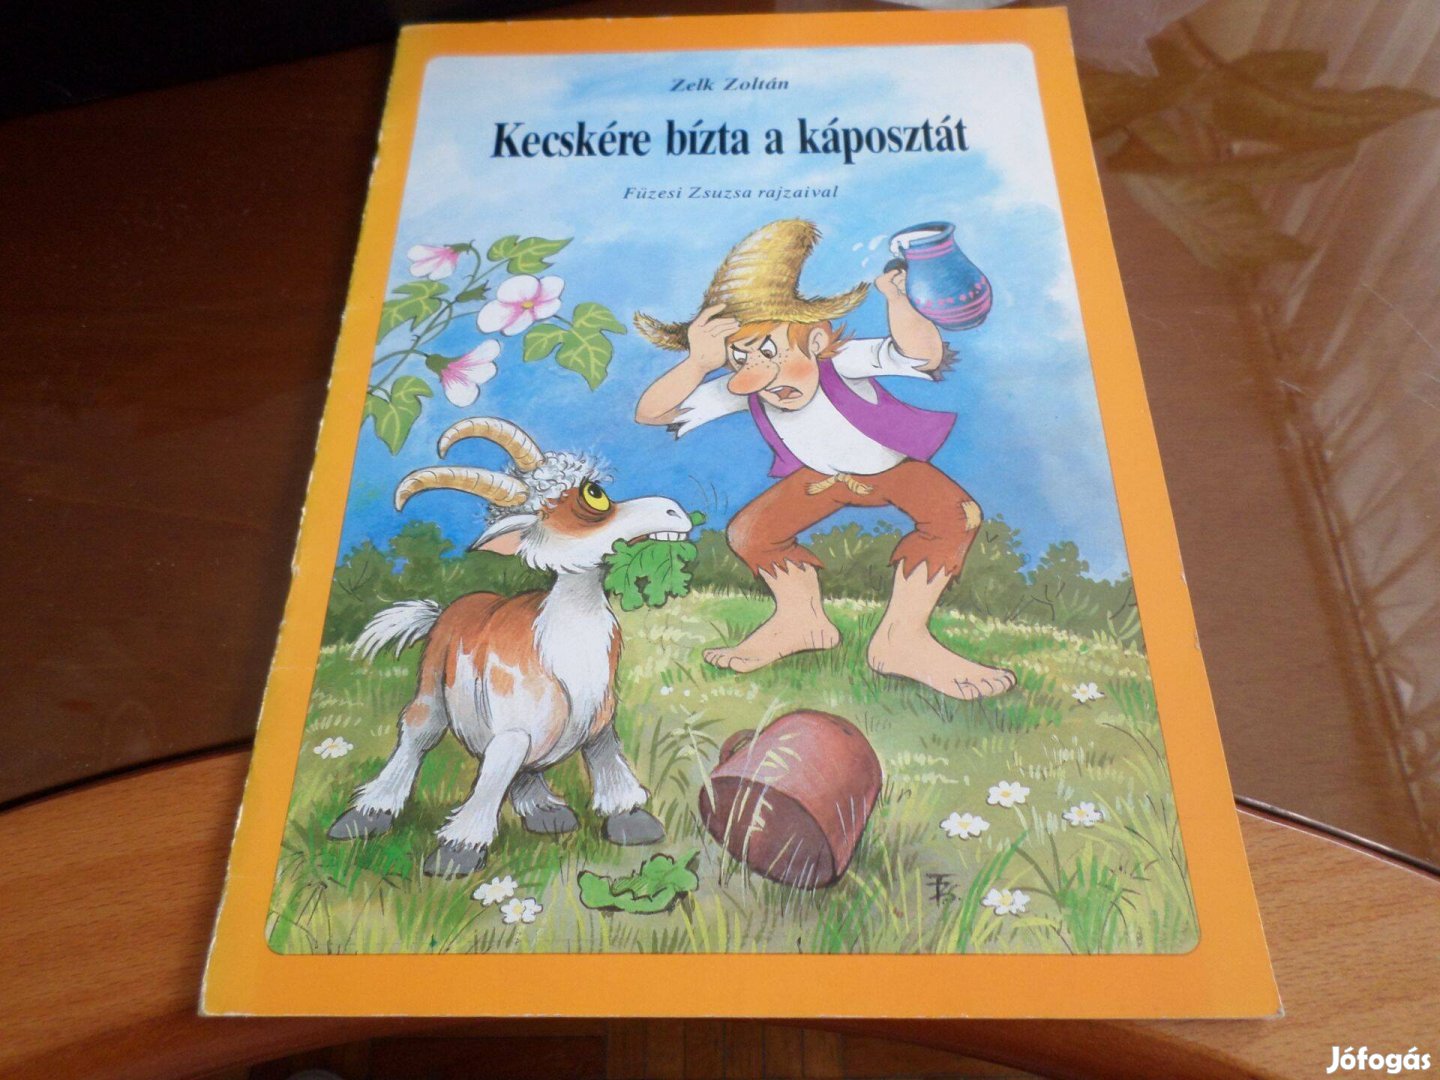 Zelk Zoltán Kecskére bízta a káposztát Füzesi Zsuzsa rajz gyermekkönyv